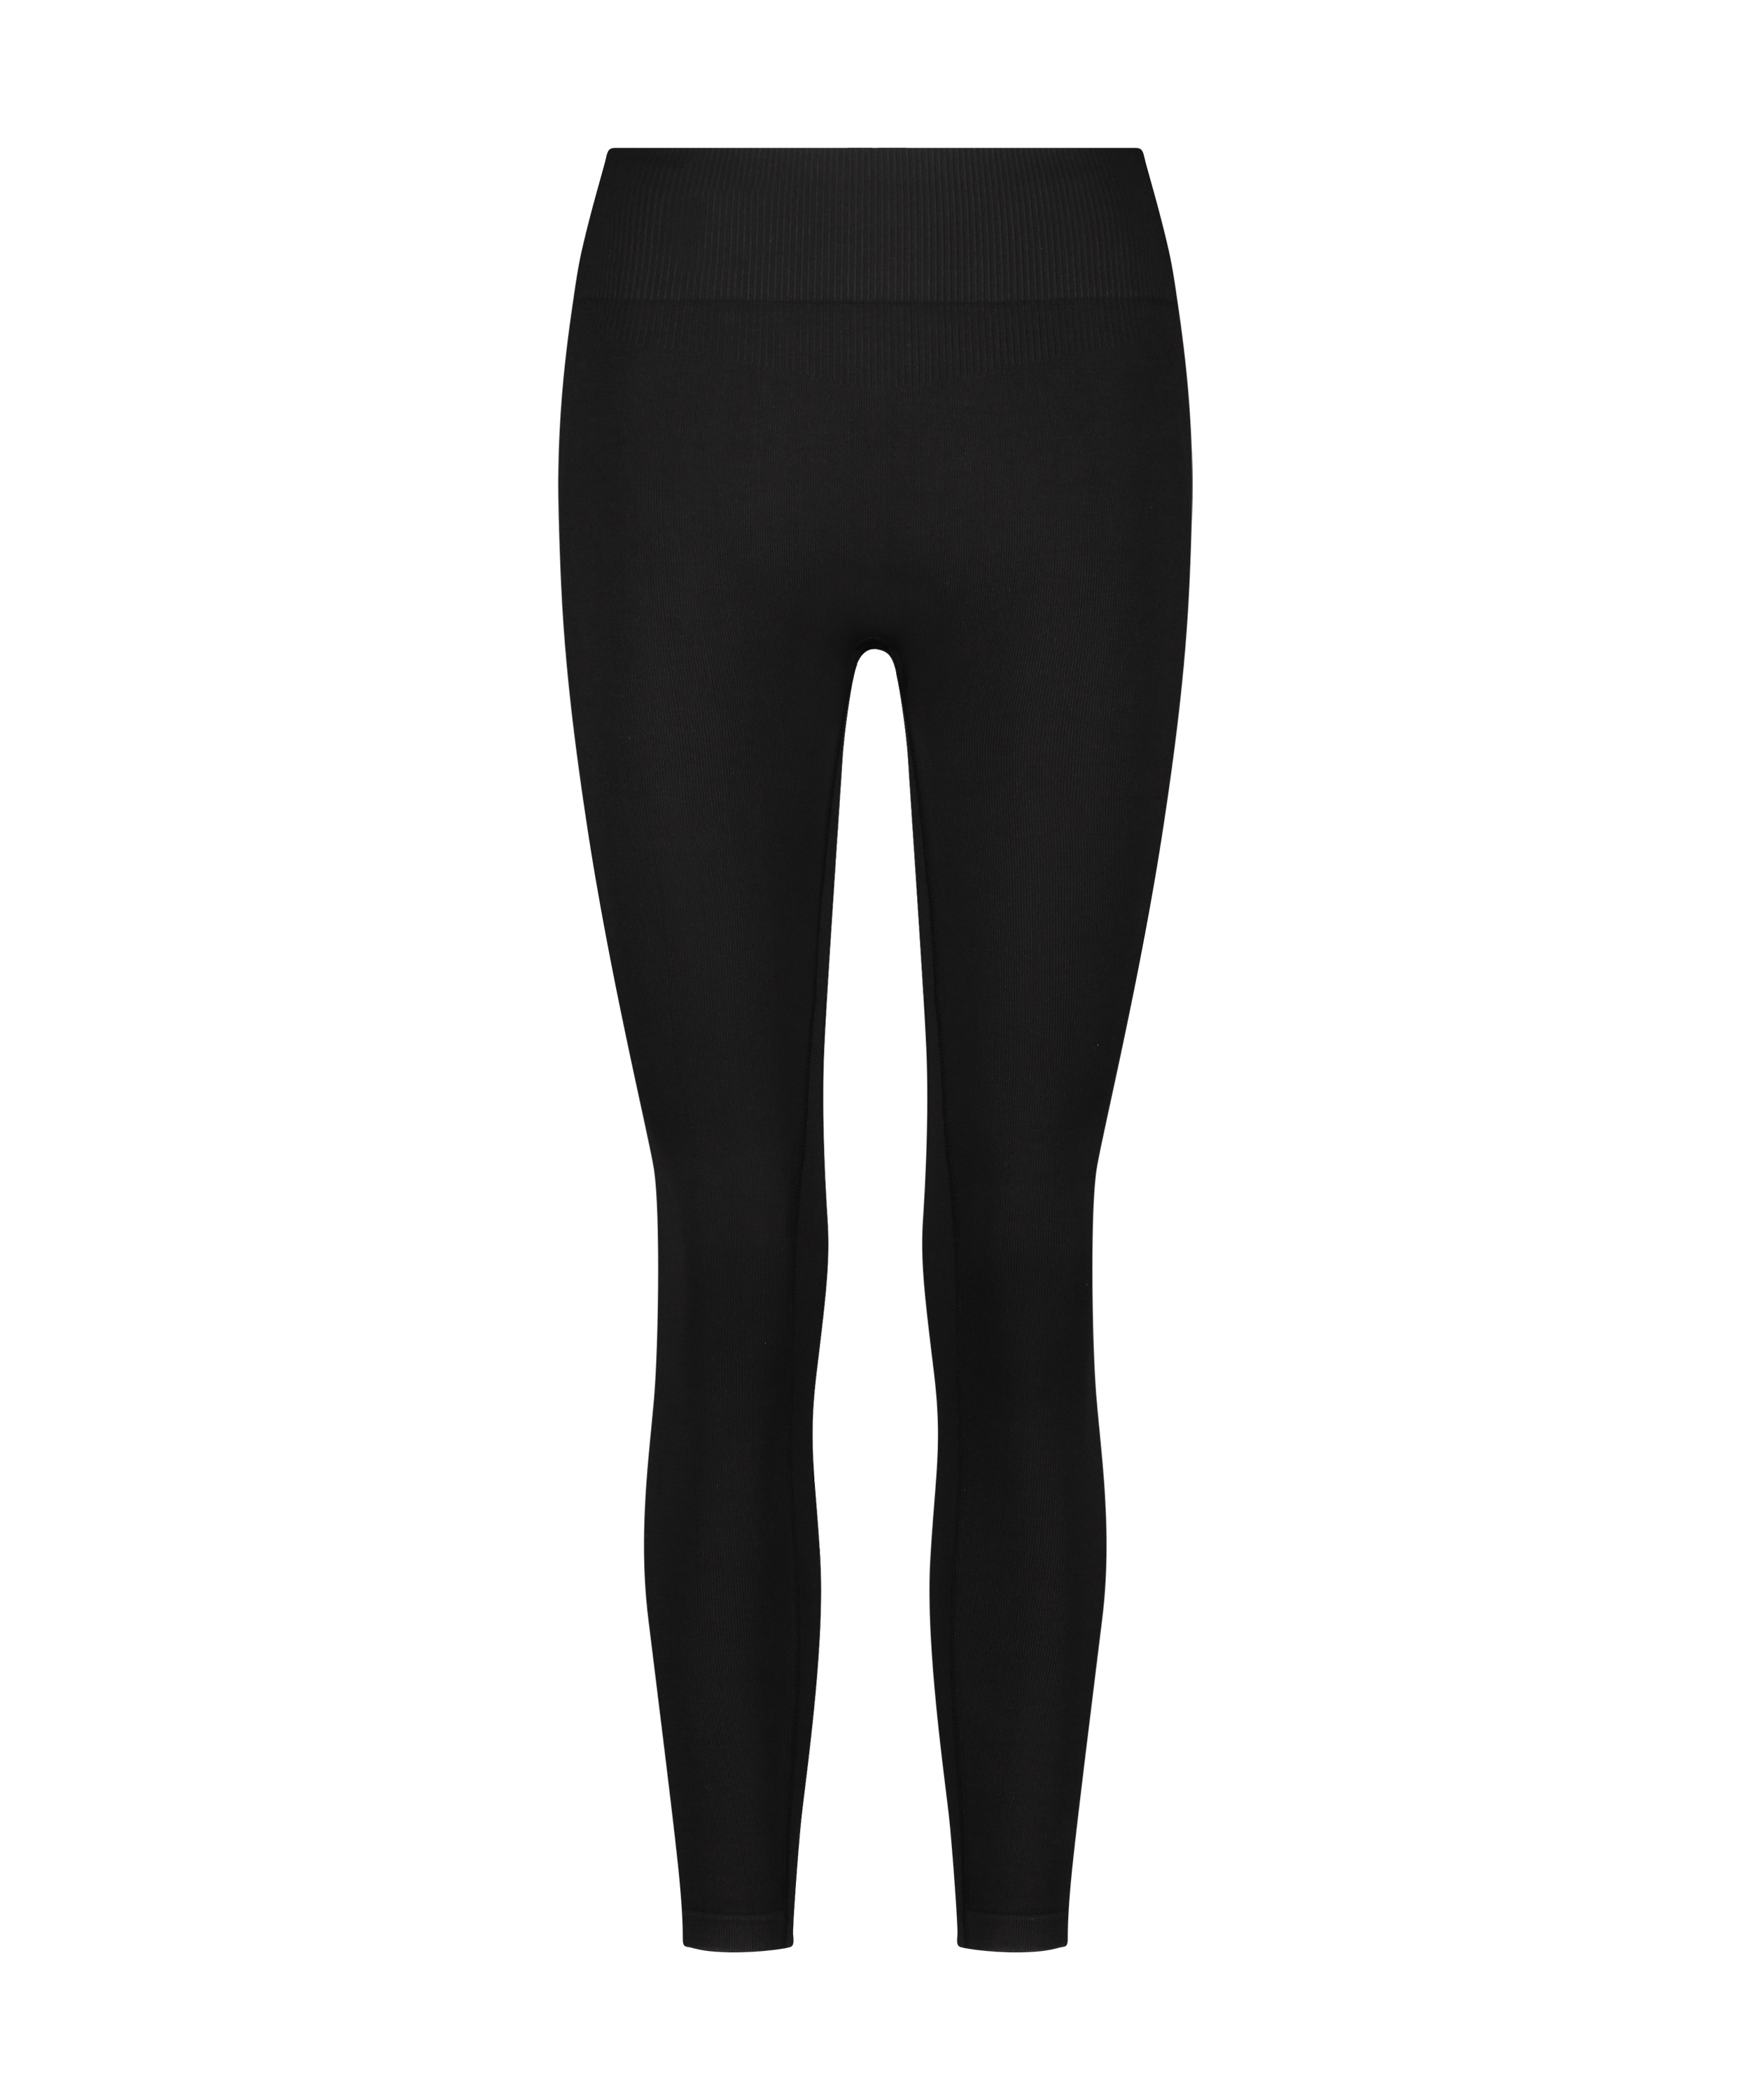 Bezszwowe legginsy sportowe z wysokim stanem HKMX, Czarny, main